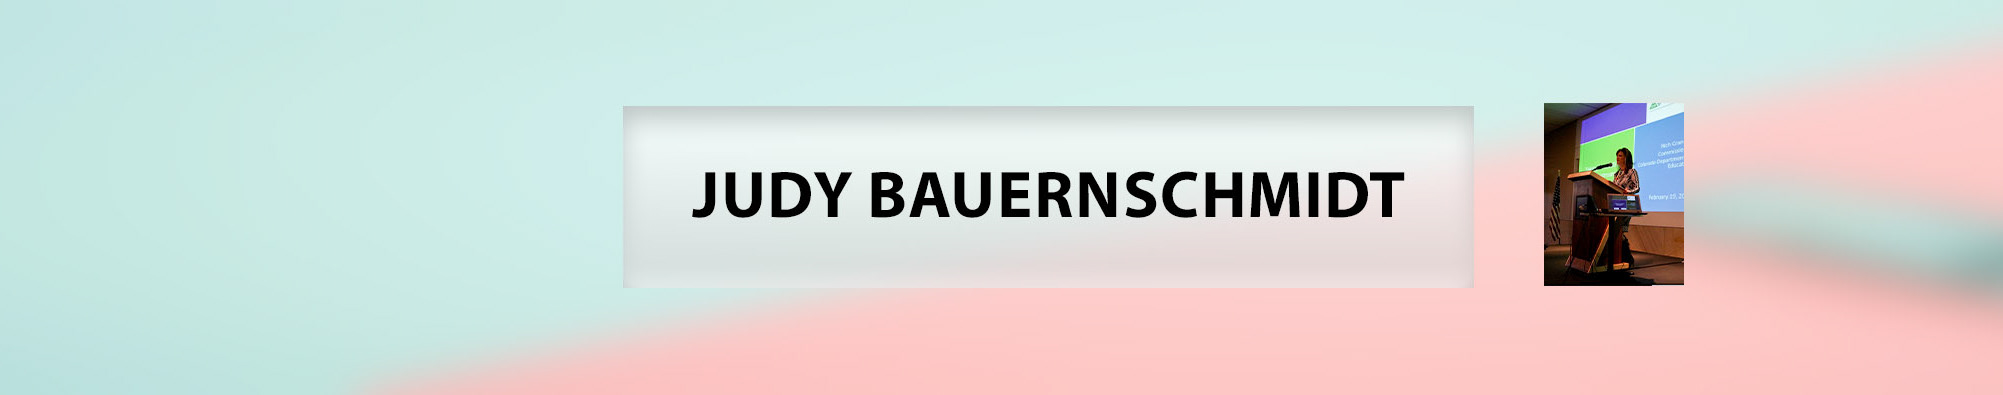 Judy Bauernschmidt's profile banner